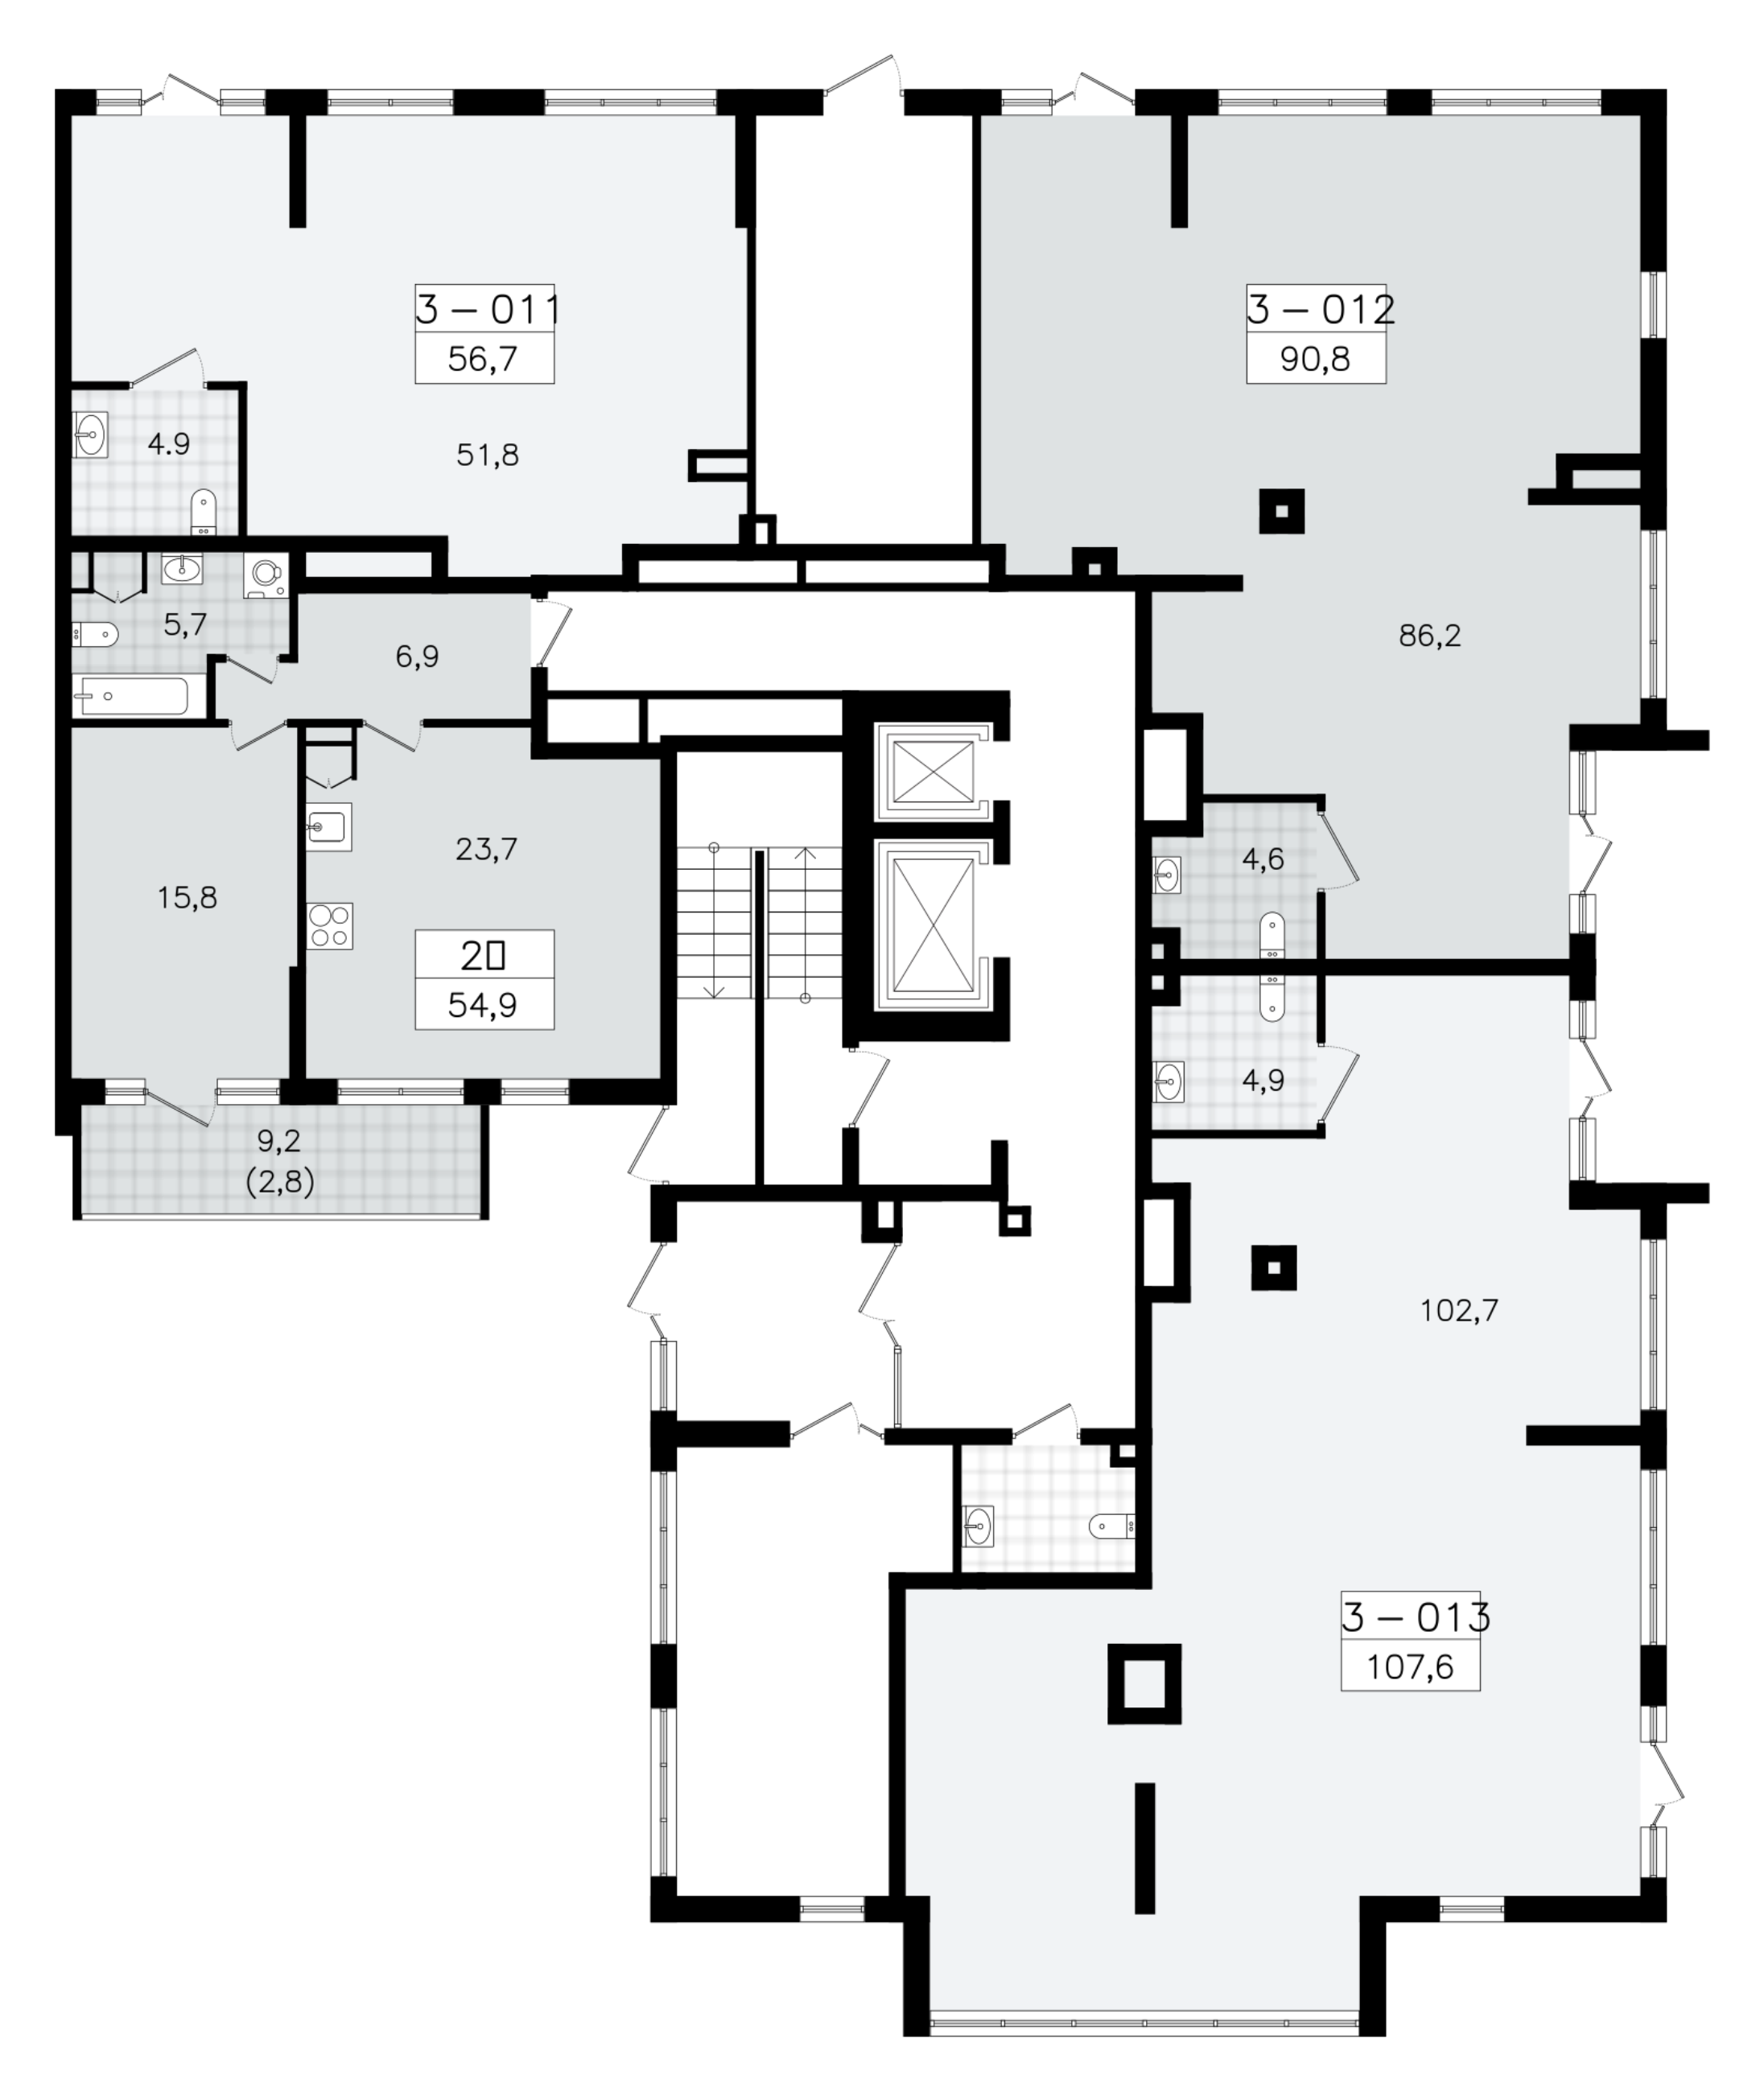 Помещение, 107.6 м² - планировка этажа